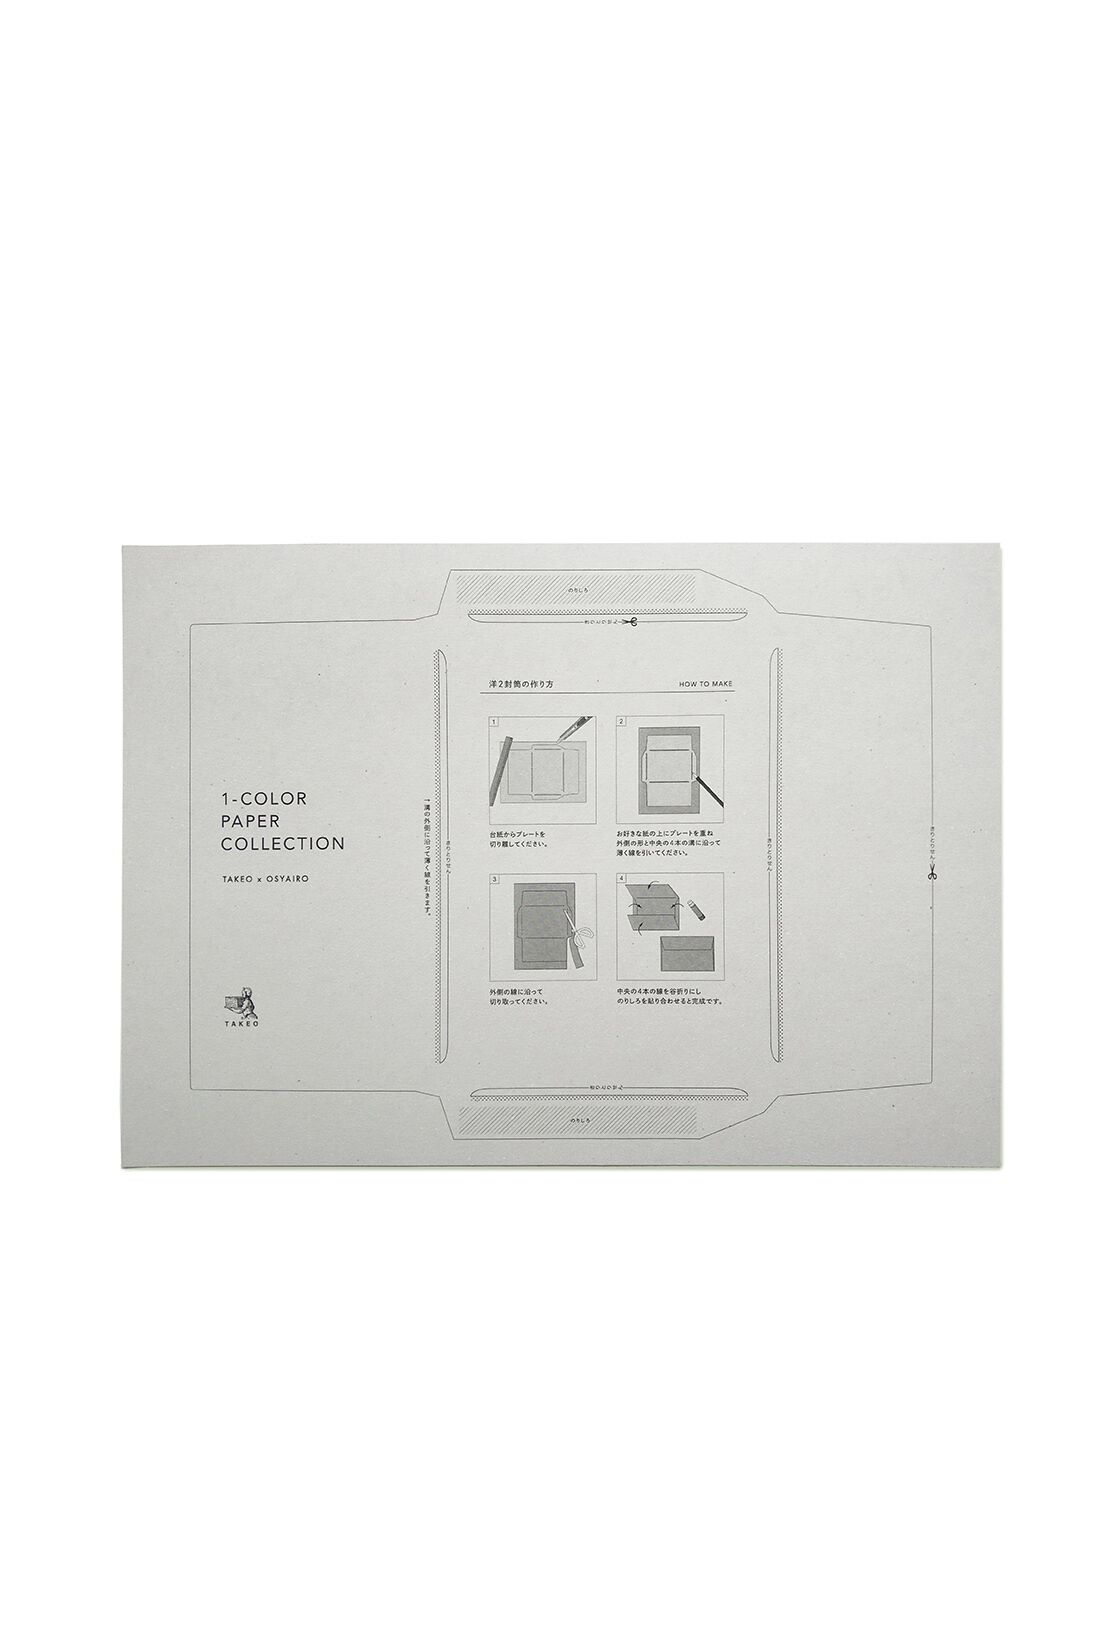 OSYAIRO|OSYAIRO 紙の専門商社竹尾が選ぶ　色を楽しむ紙セットの会〈青〉|付属の型紙を使ってA4サイズの紙で封筒がきれいに作れます。